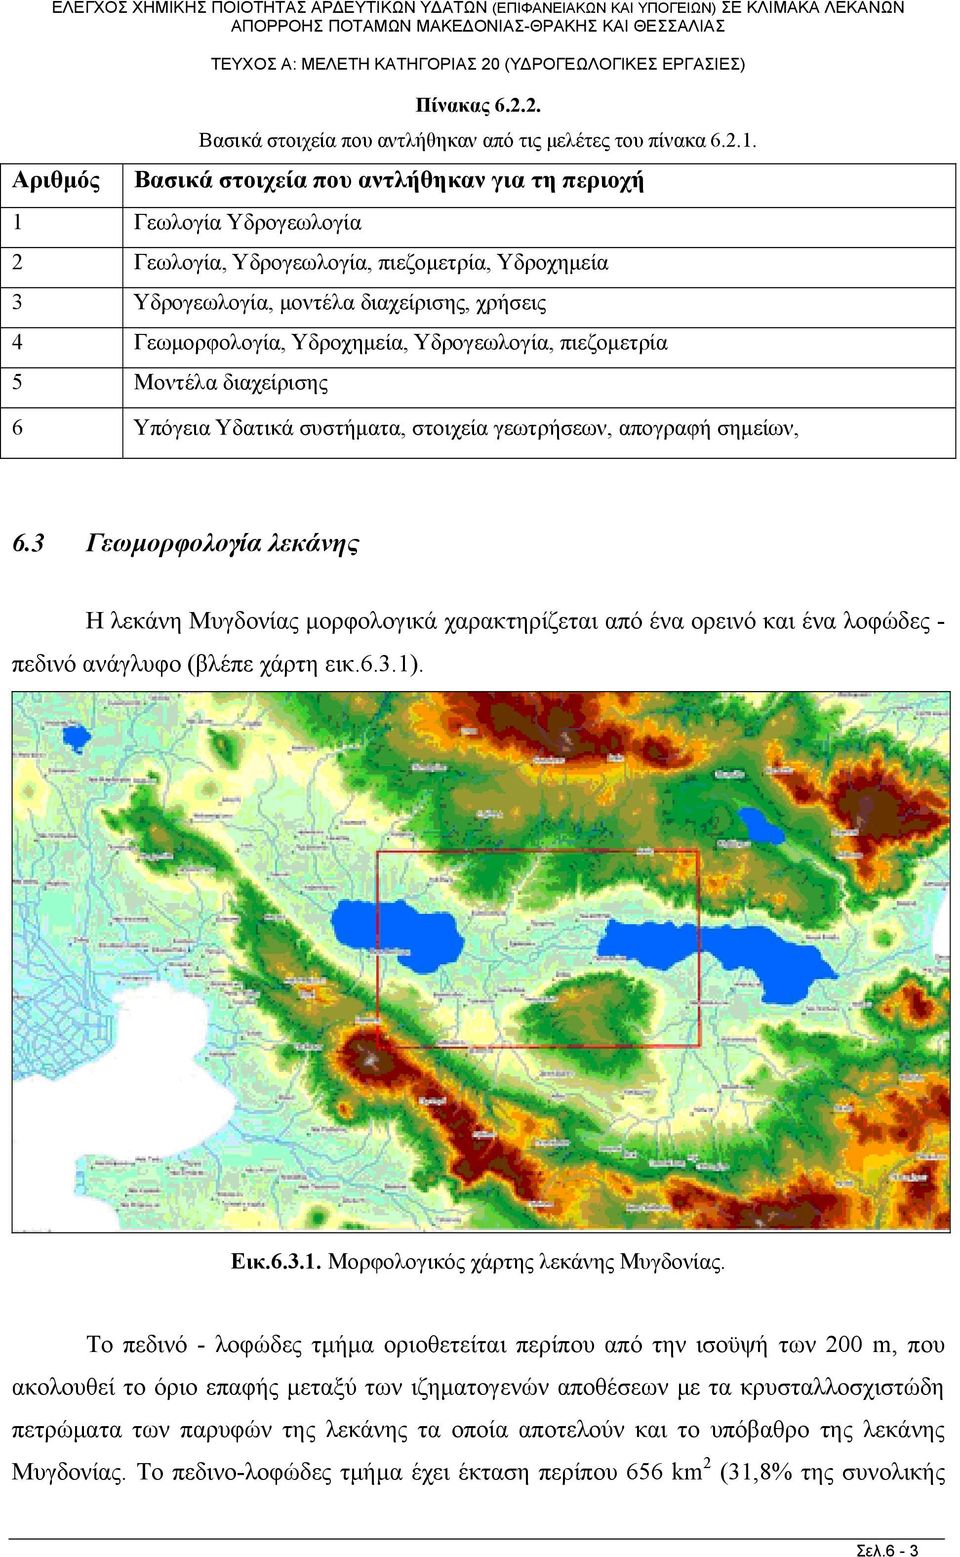 Υδρογεωλογία, πιεζομετρία 5 Μοντέλα διαχείρισης 6 Υπόγεια Υδατικά συστήματα, στοιχεία γεωτρήσεων, απογραφή σημείων, 6.